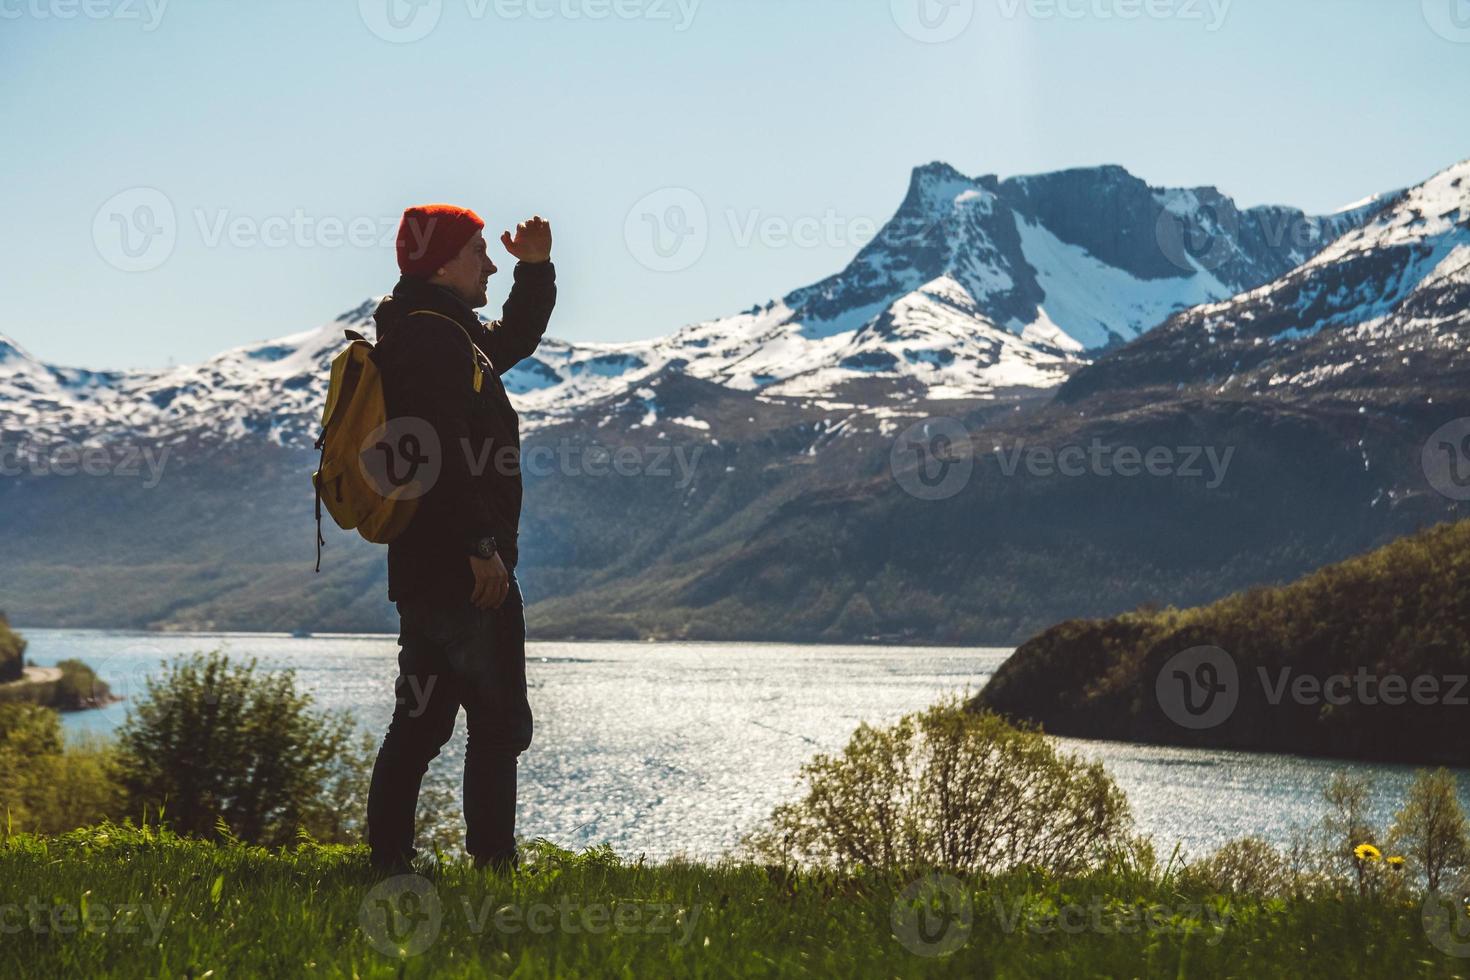 jonge man met een rugzak staande op de achtergrond van bergen en meer. ruimte voor uw tekstbericht of promotionele inhoud. reis levensstijl concept foto